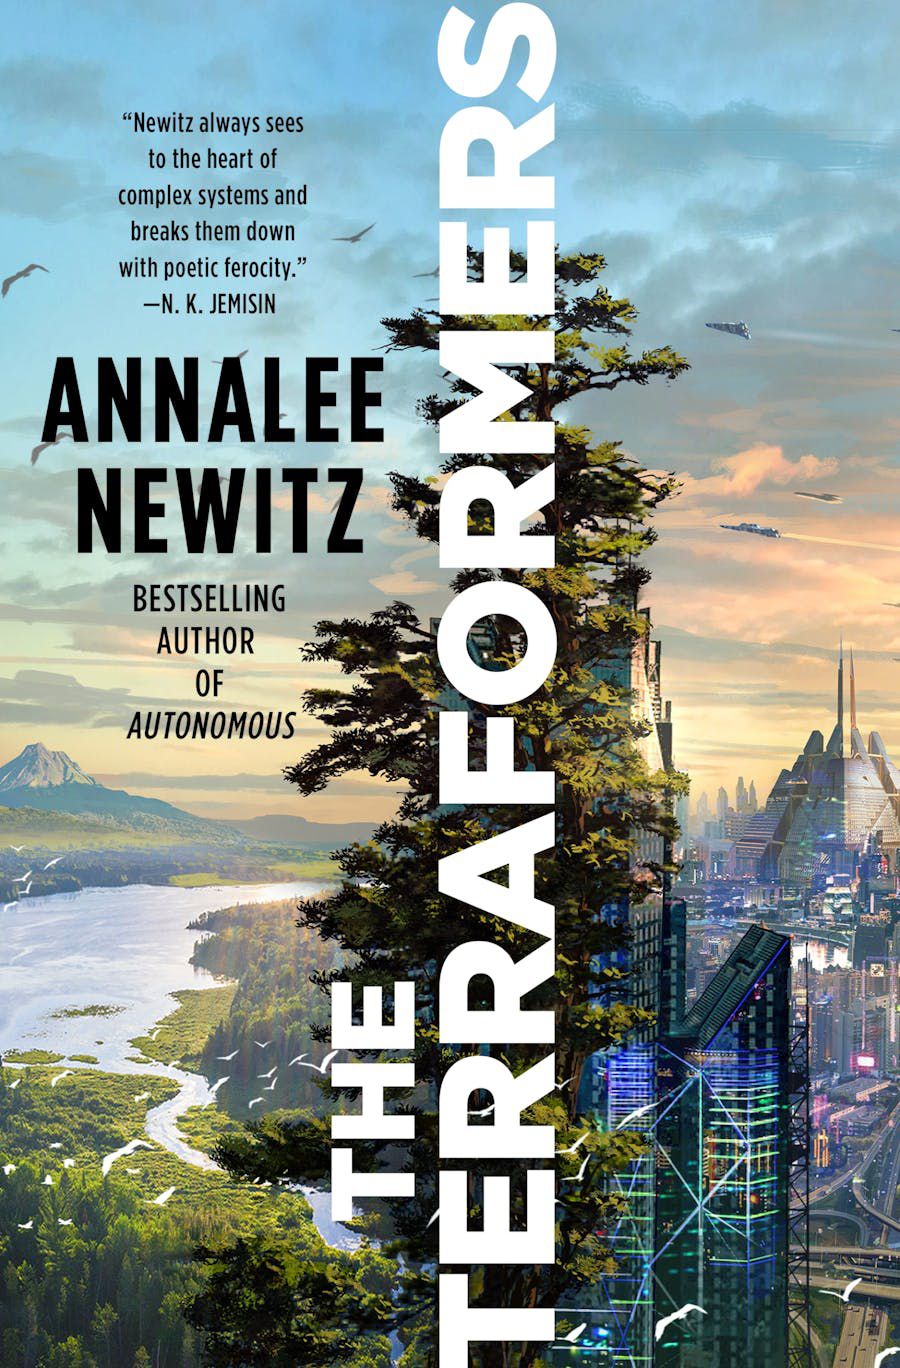 Immagine di copertina per The Terraformers di Annalee Newitz, che presenta un paesaggio urbano futuristico con una vegetazione lussureggiante.